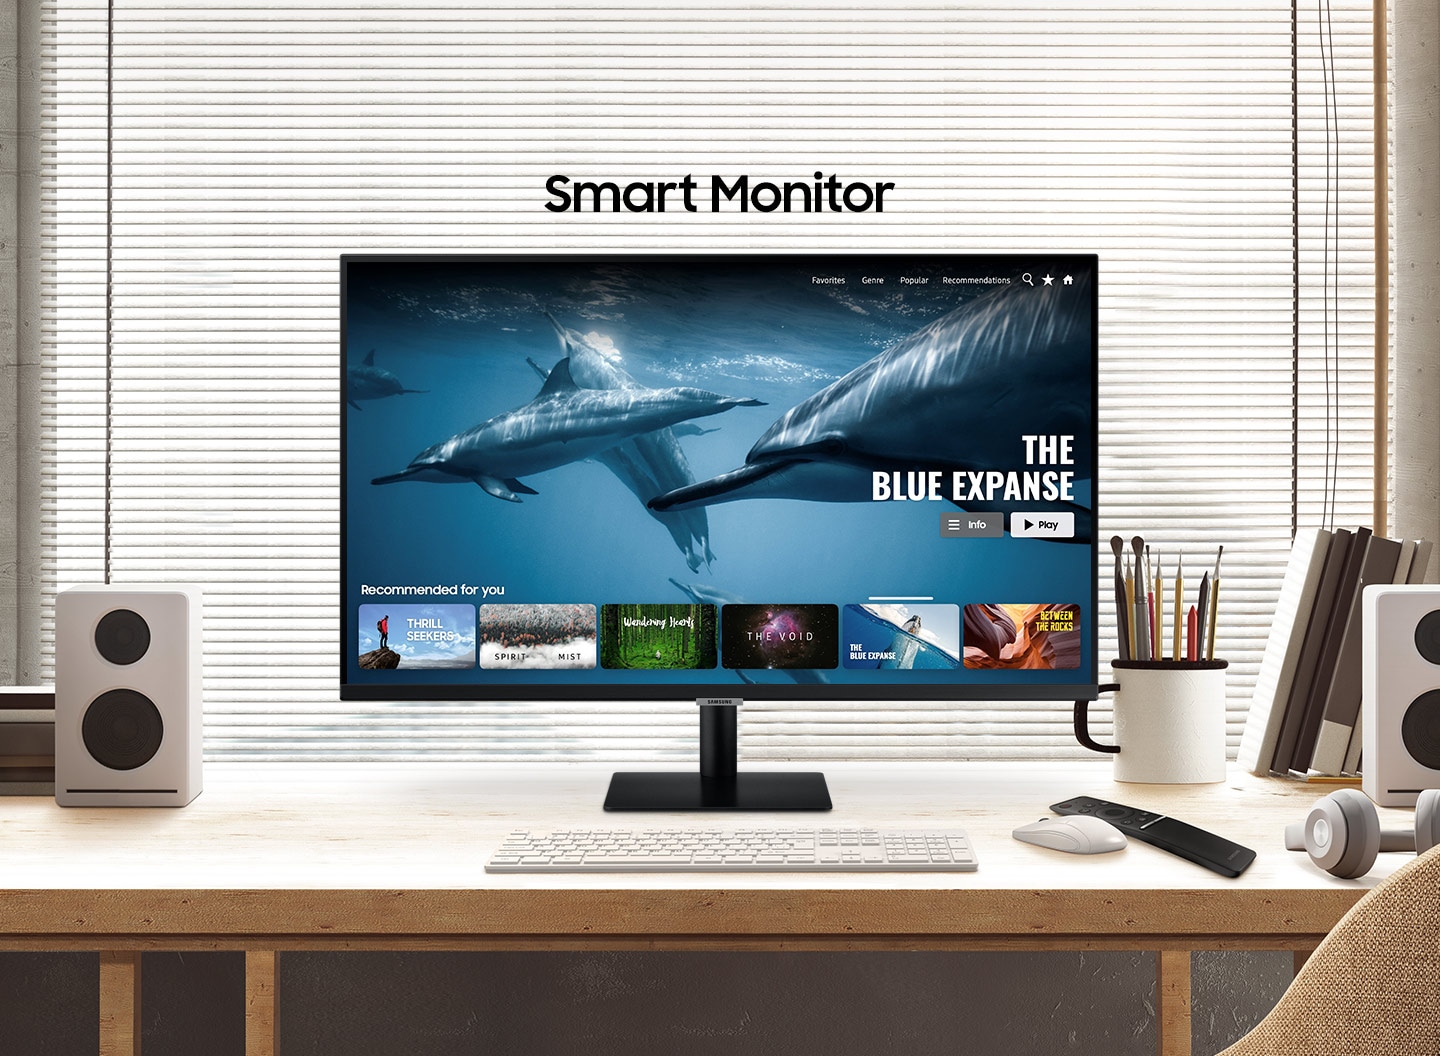 Monitor und Smart TV in Einem